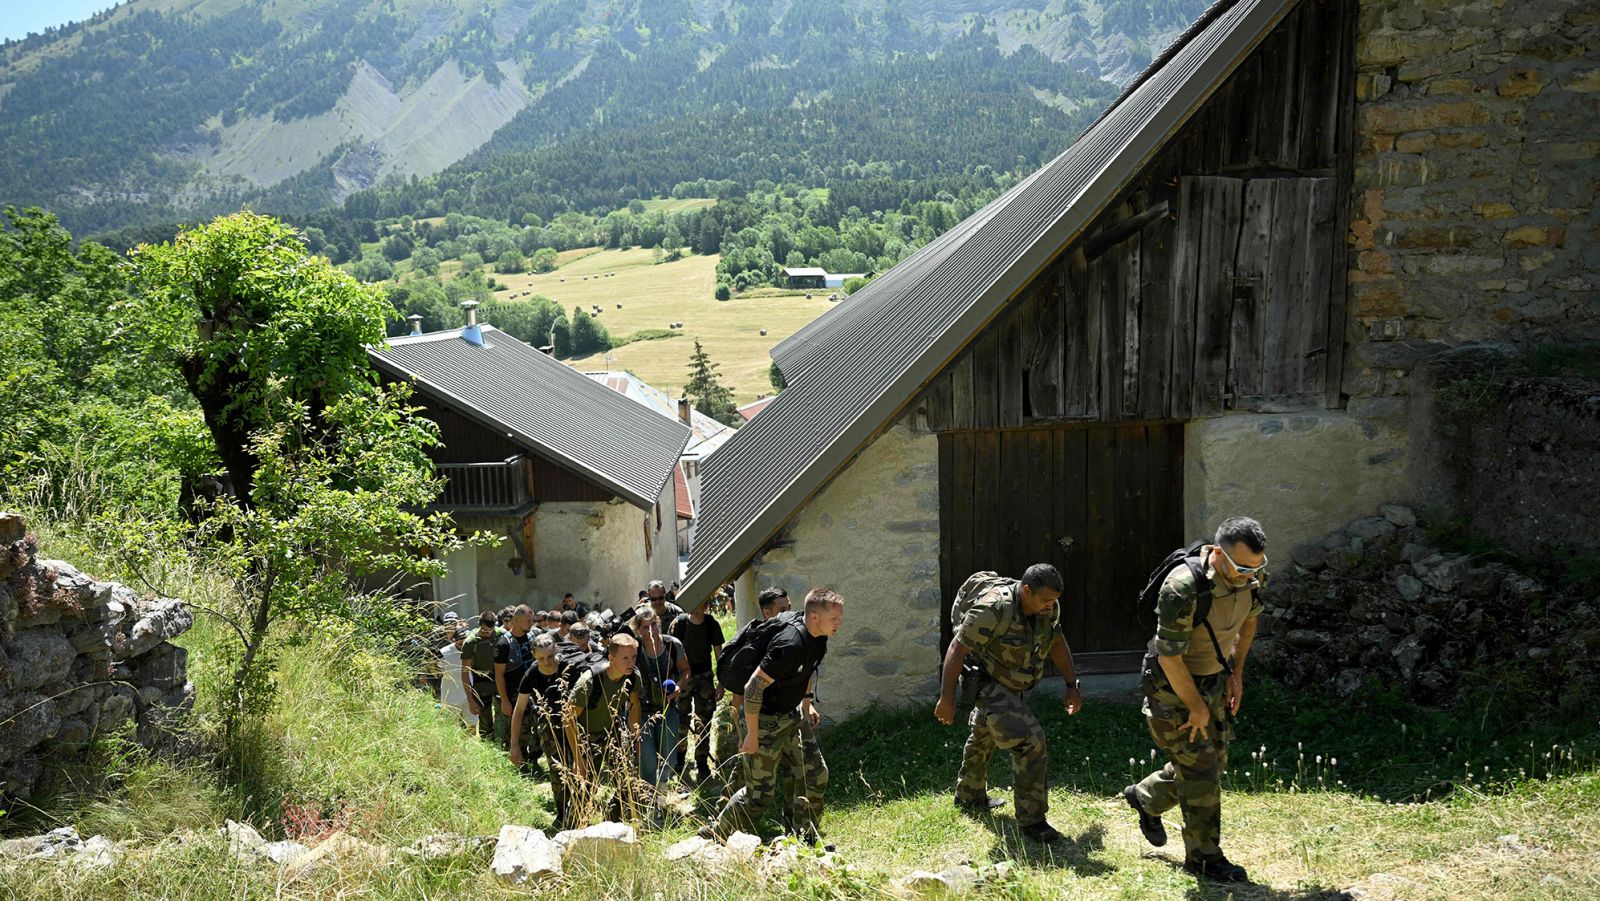 Buscan a un niño que desapareció misteriosamente en un remoto pueblo de los Alpes franceses